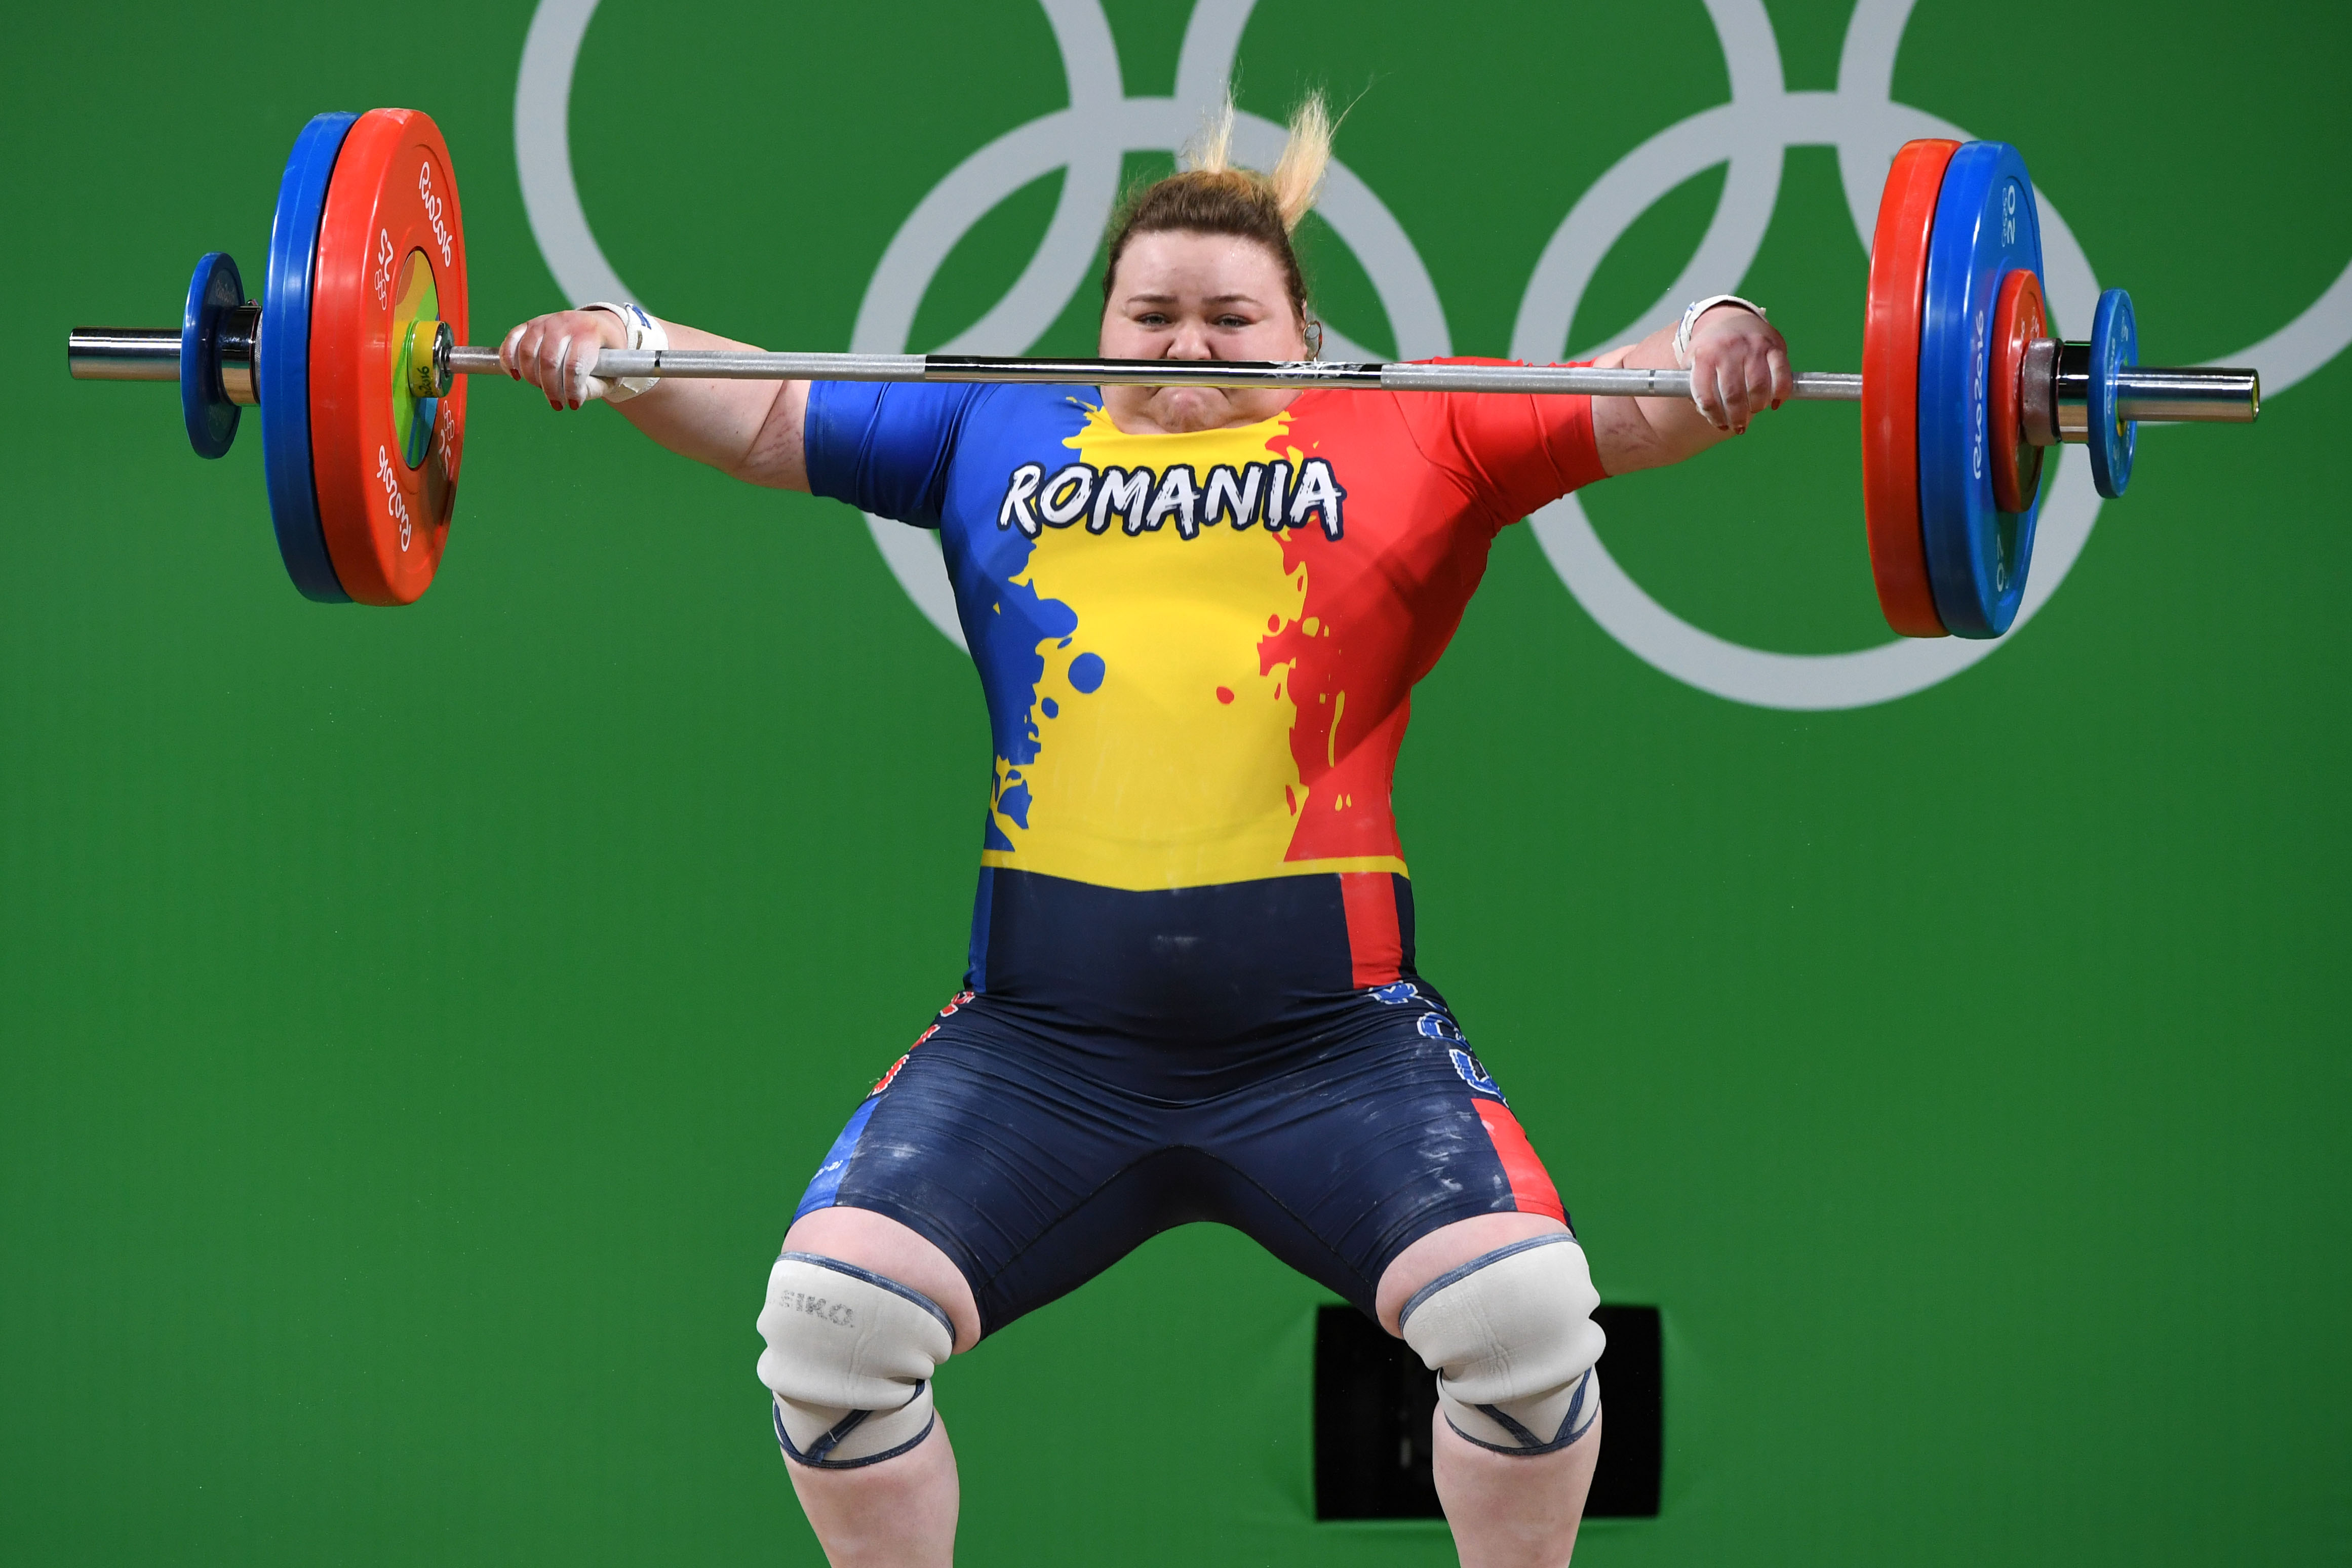 Lemond a Román Olimpiai Bizottság elnöke a hamis mezek miatt